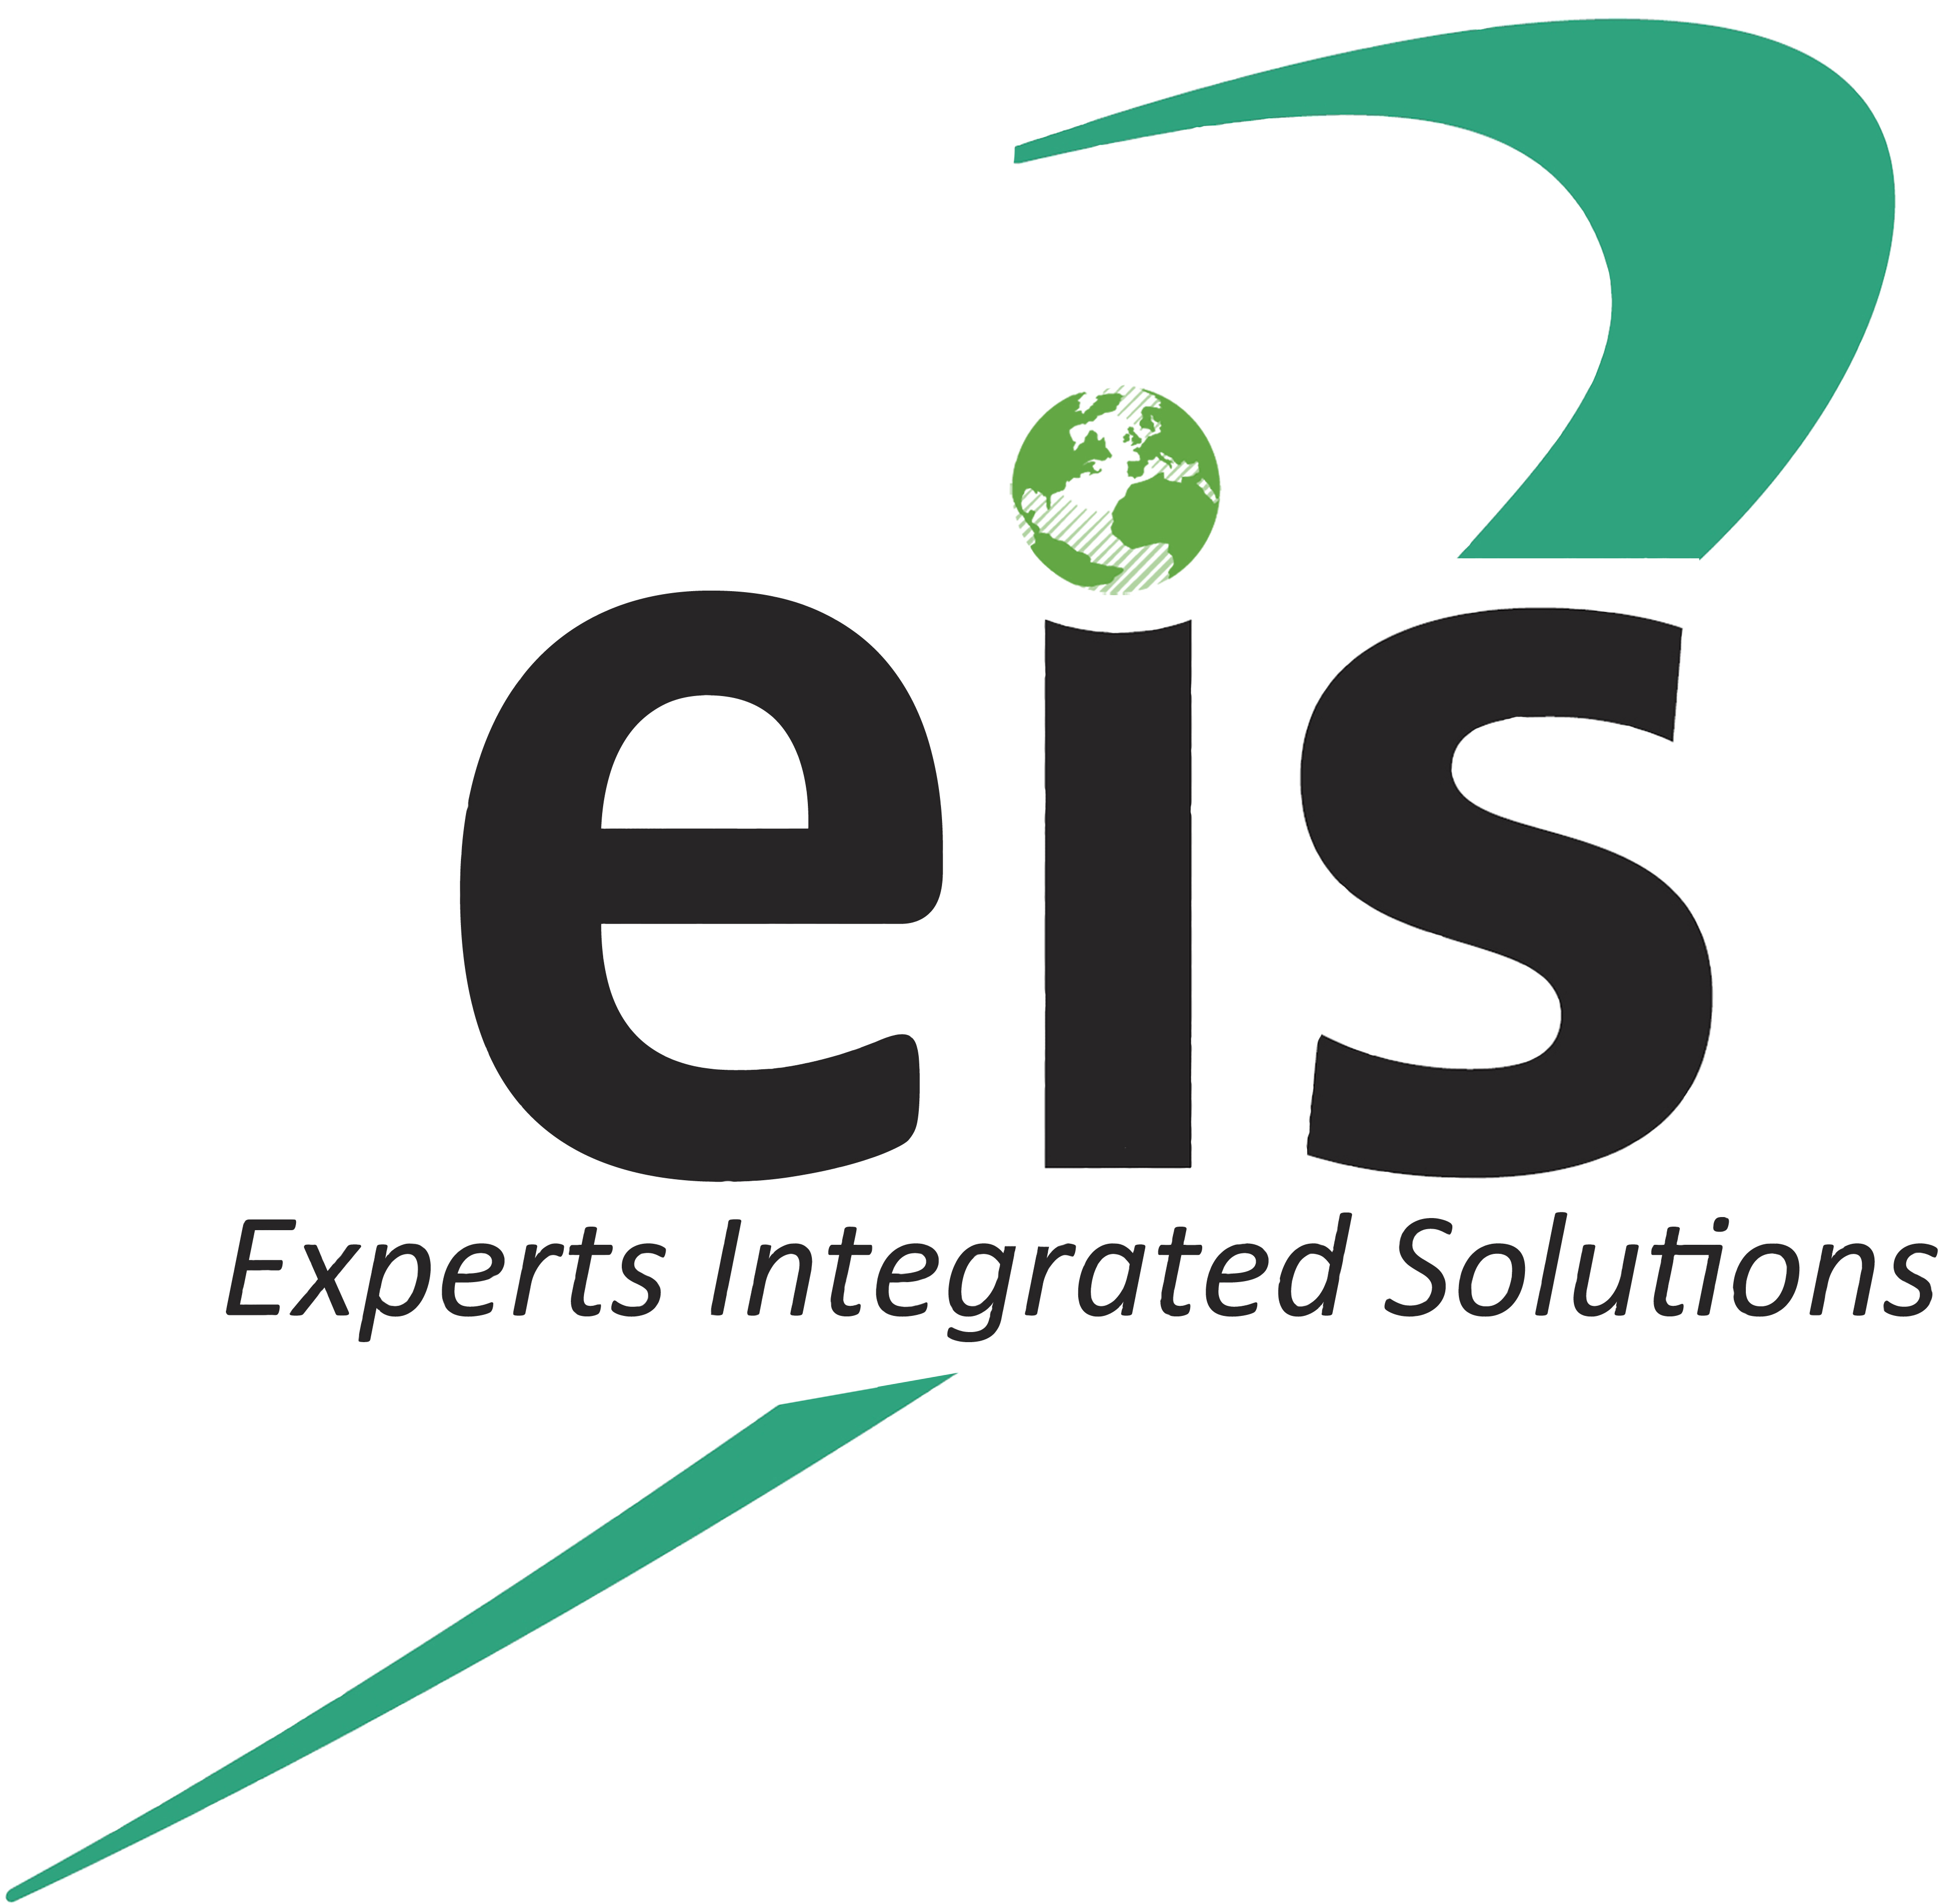 K & M heeft een distributeur met EIS in Egypte